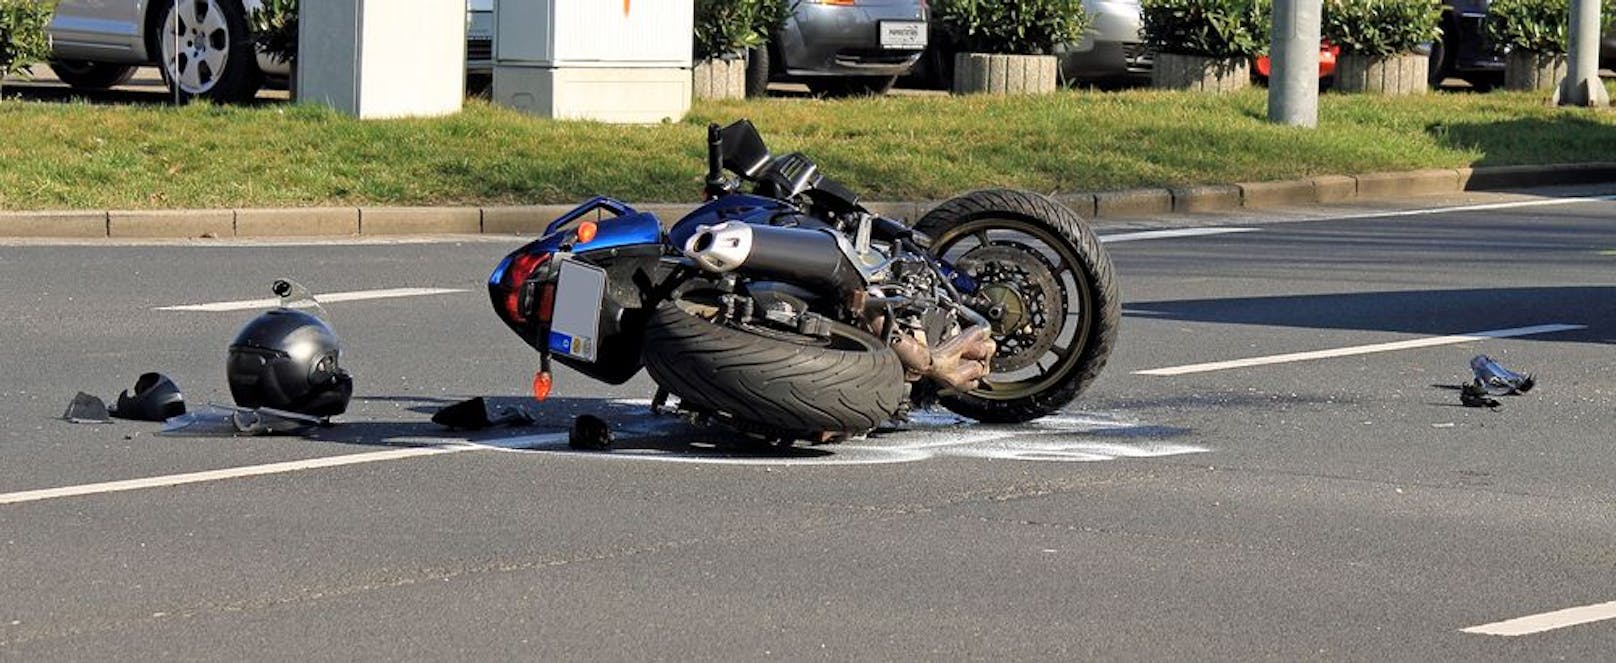 Motorradfahrer nach Sturz schwer verletzt. | heute.at